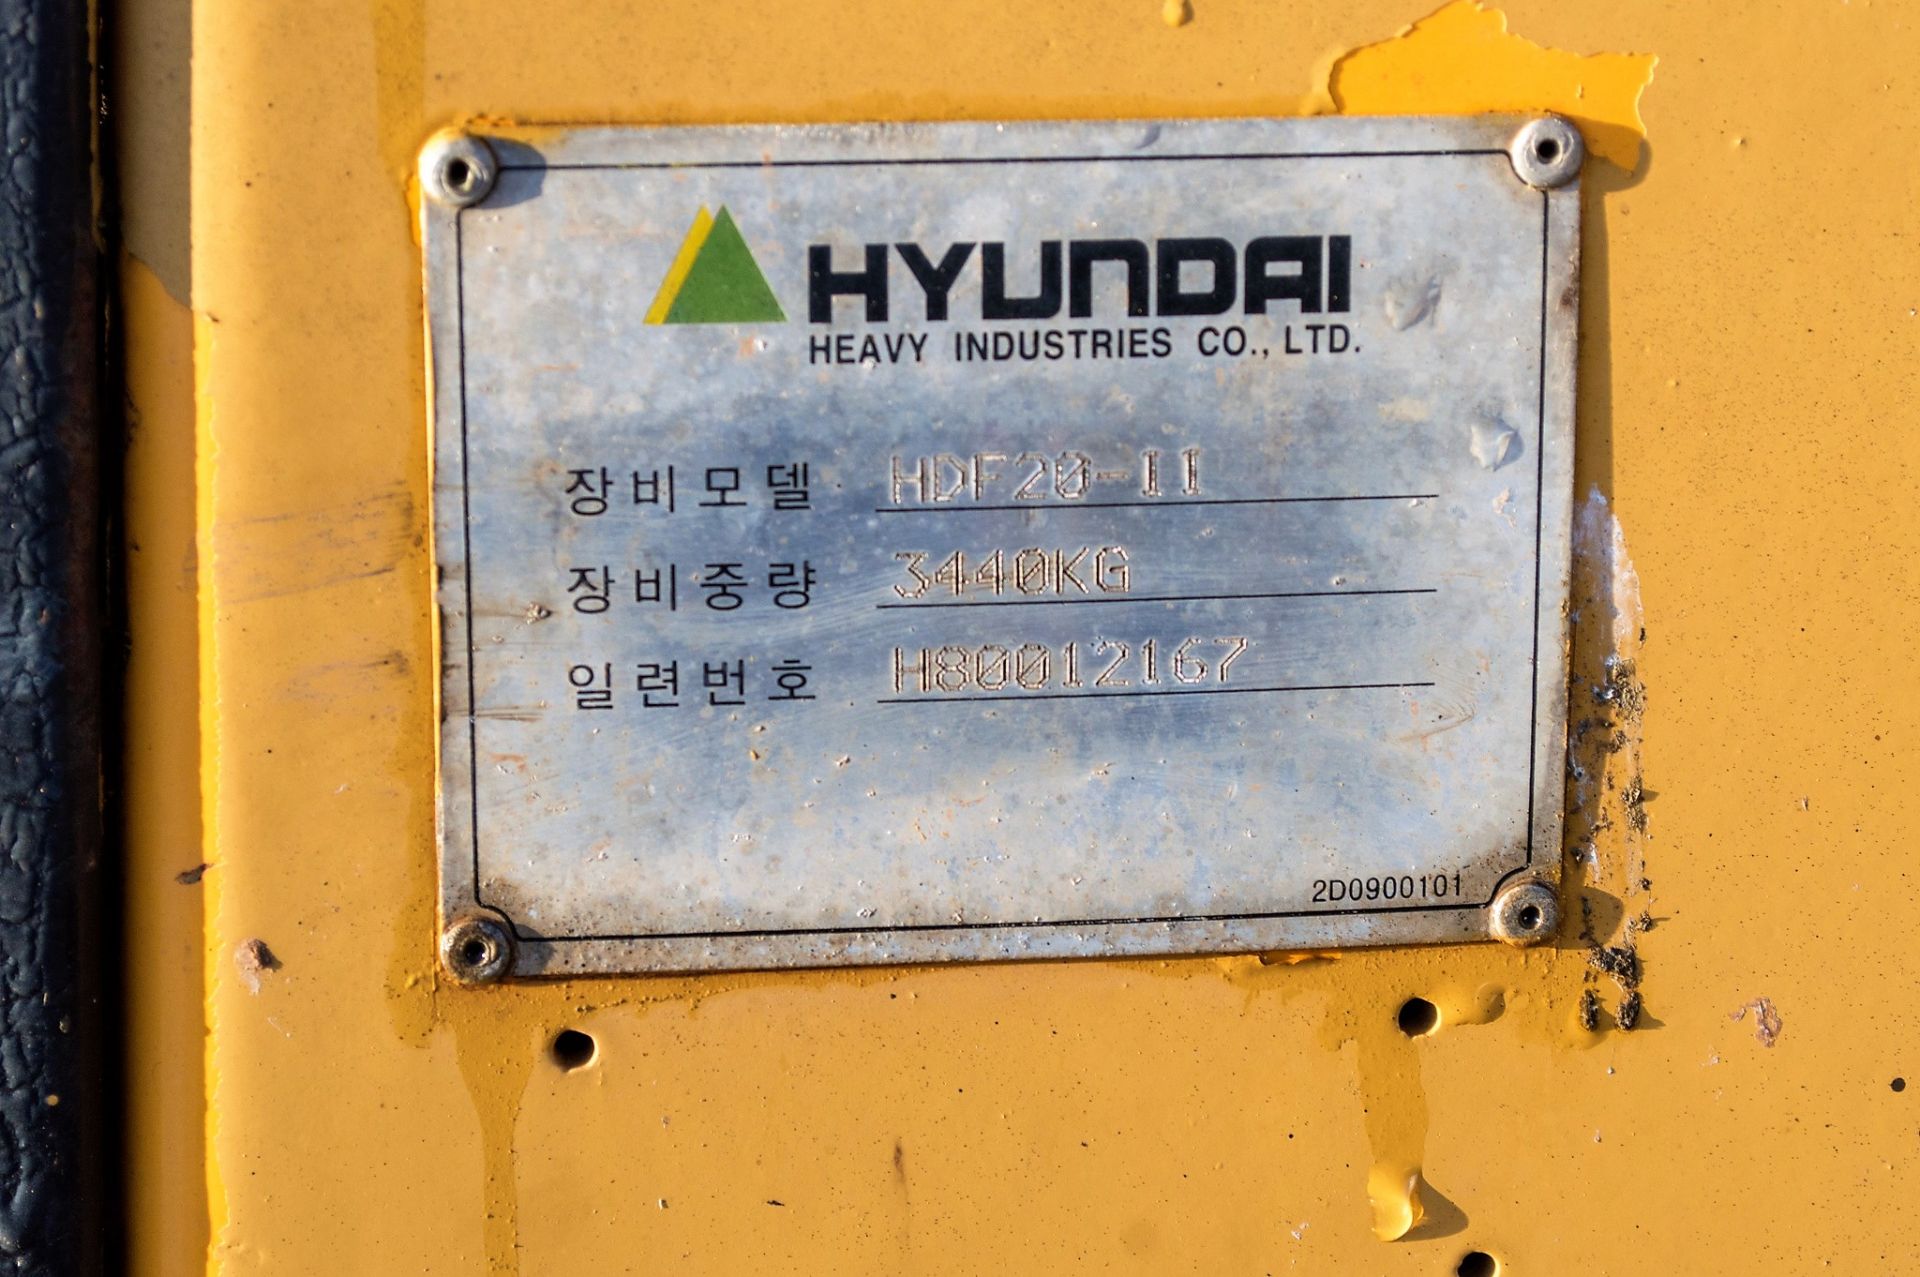 Hyundai HDF20-II 2 tonne diesel fork lift truck S/N: H8001267 Recorded Hours: 5719 - Image 18 of 18